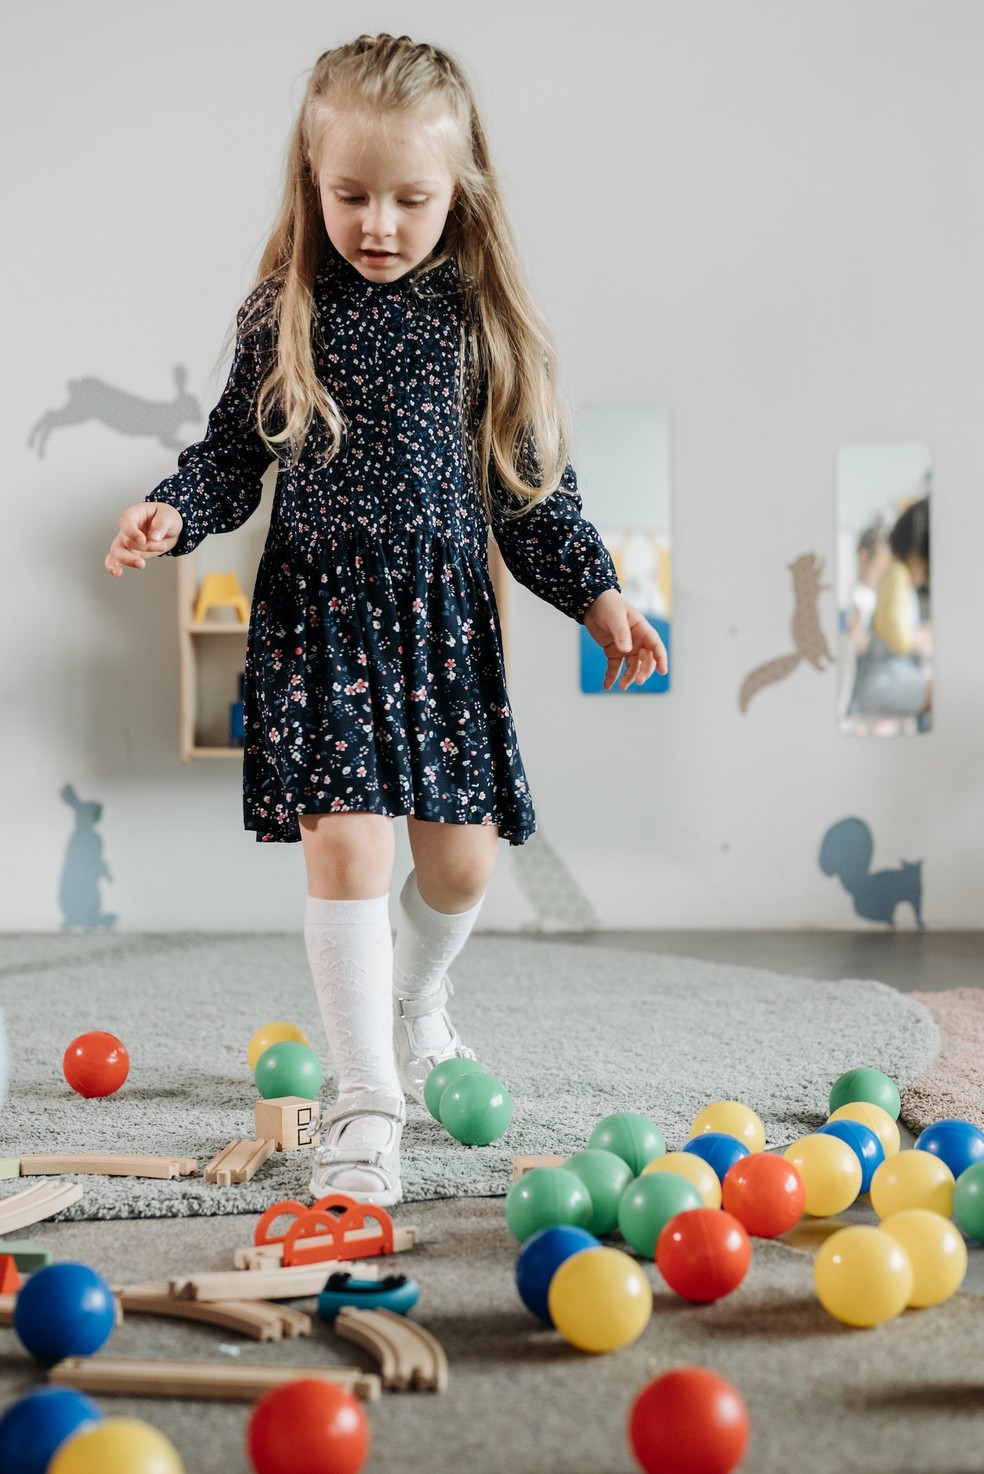 Depois das brincadeiras, guarde os brinquedos para evitar que a criança tropece e caia — Foto: Pexels / Pavel Danilyuk / CreativeCommons 